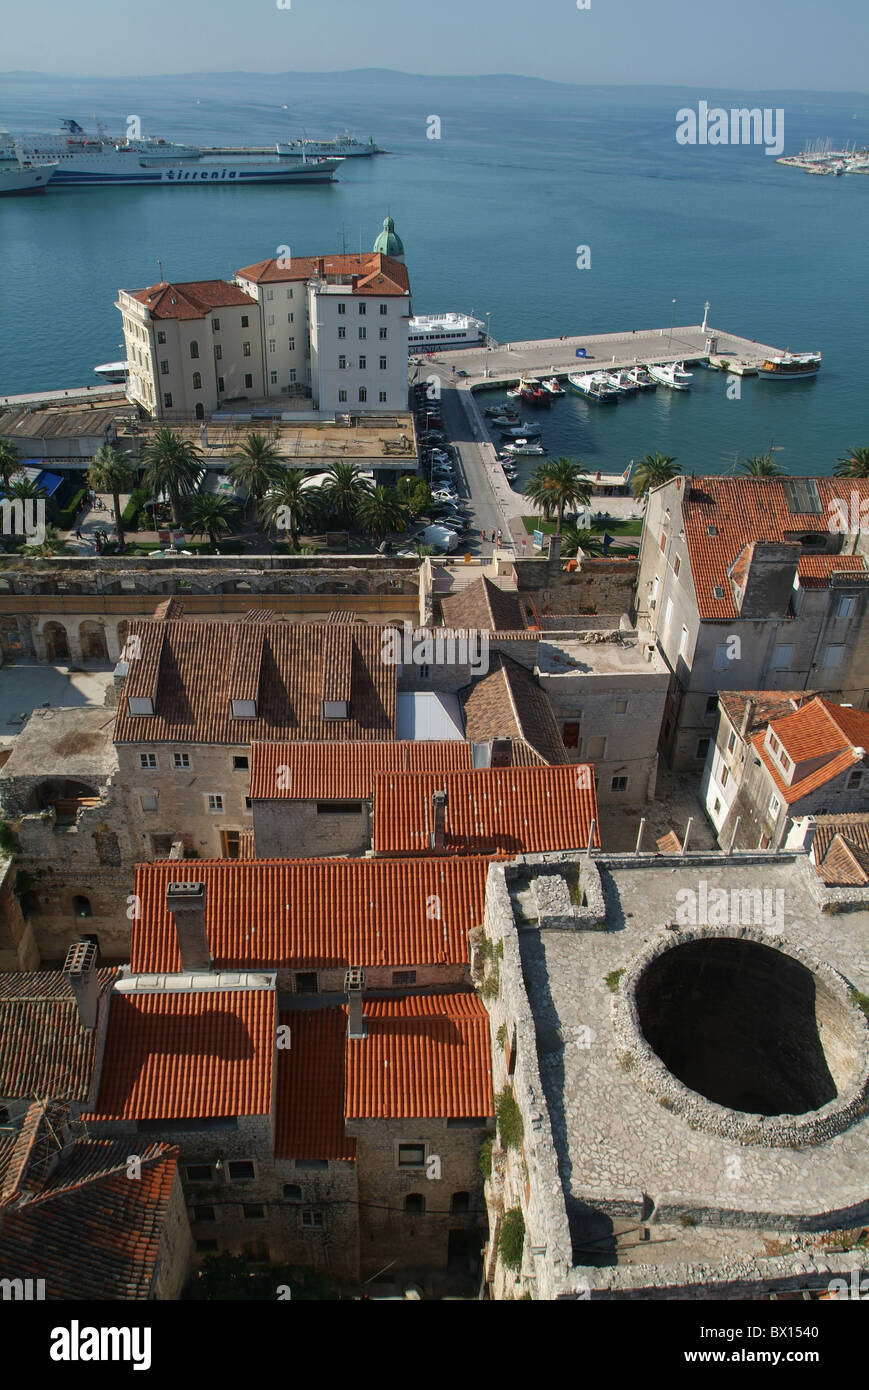 Spalato Città tetti panoramica mare Croazia Europa Dalmazia Adriatico Mare Mediterraneo Foto Stock